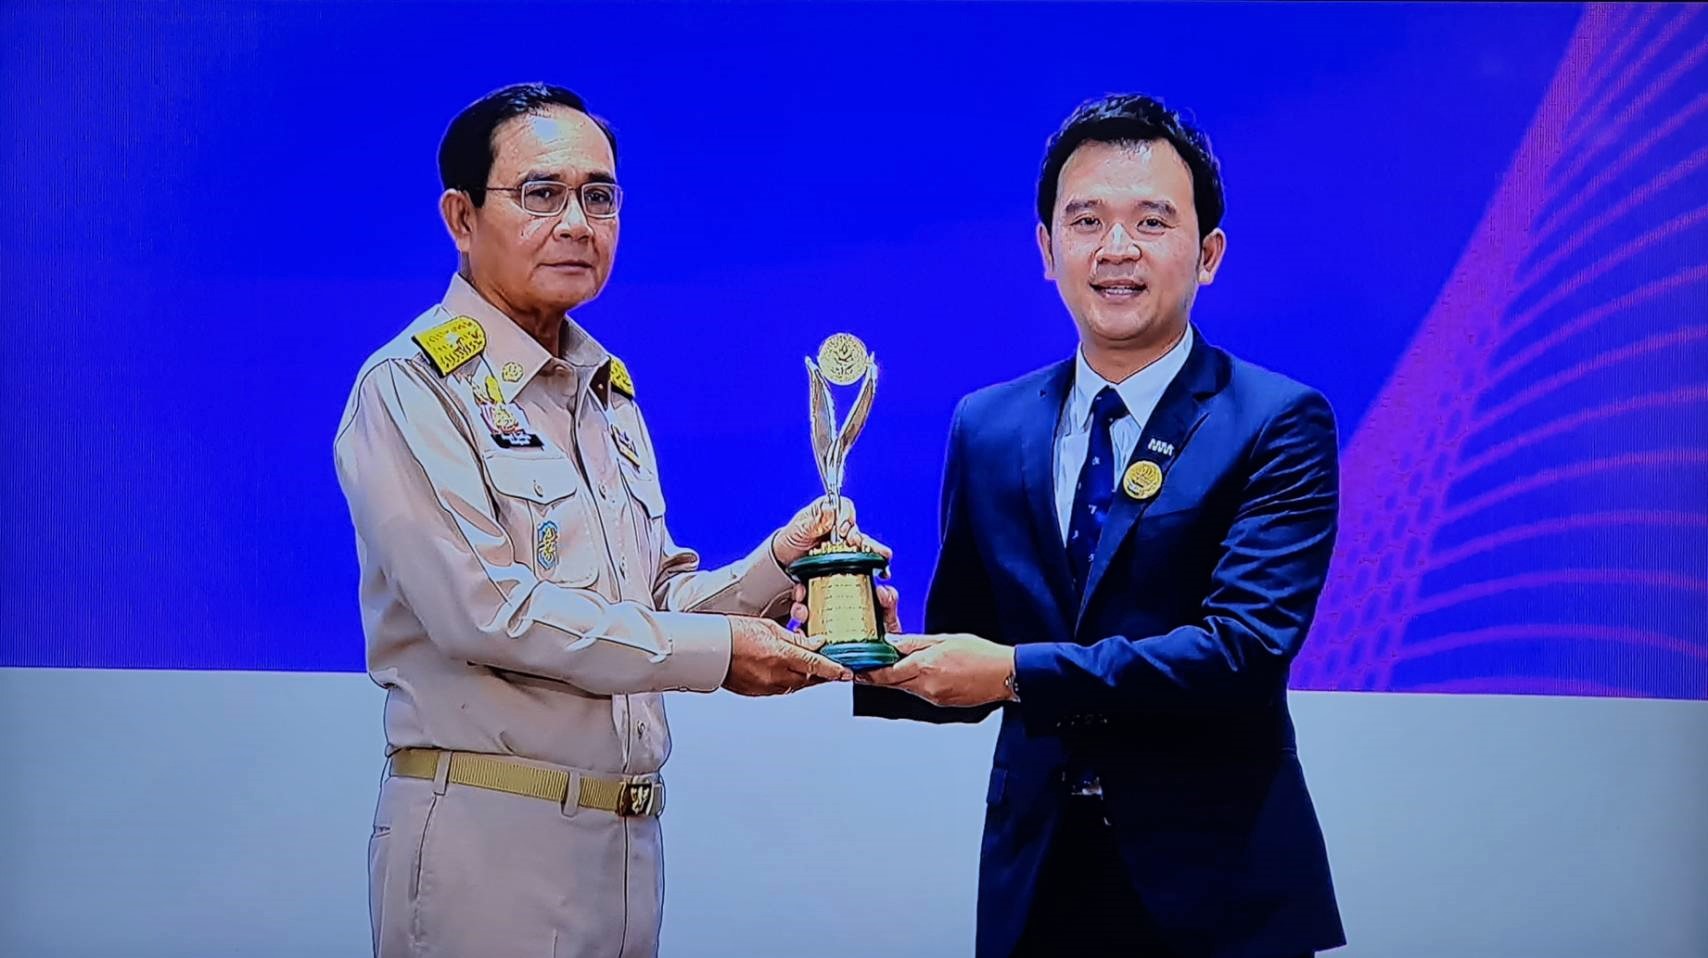 นำวิวัฒน์ รับมอบรางวัลเกียรติยศของอุตสาหกรรมไทยประจำปี 2563